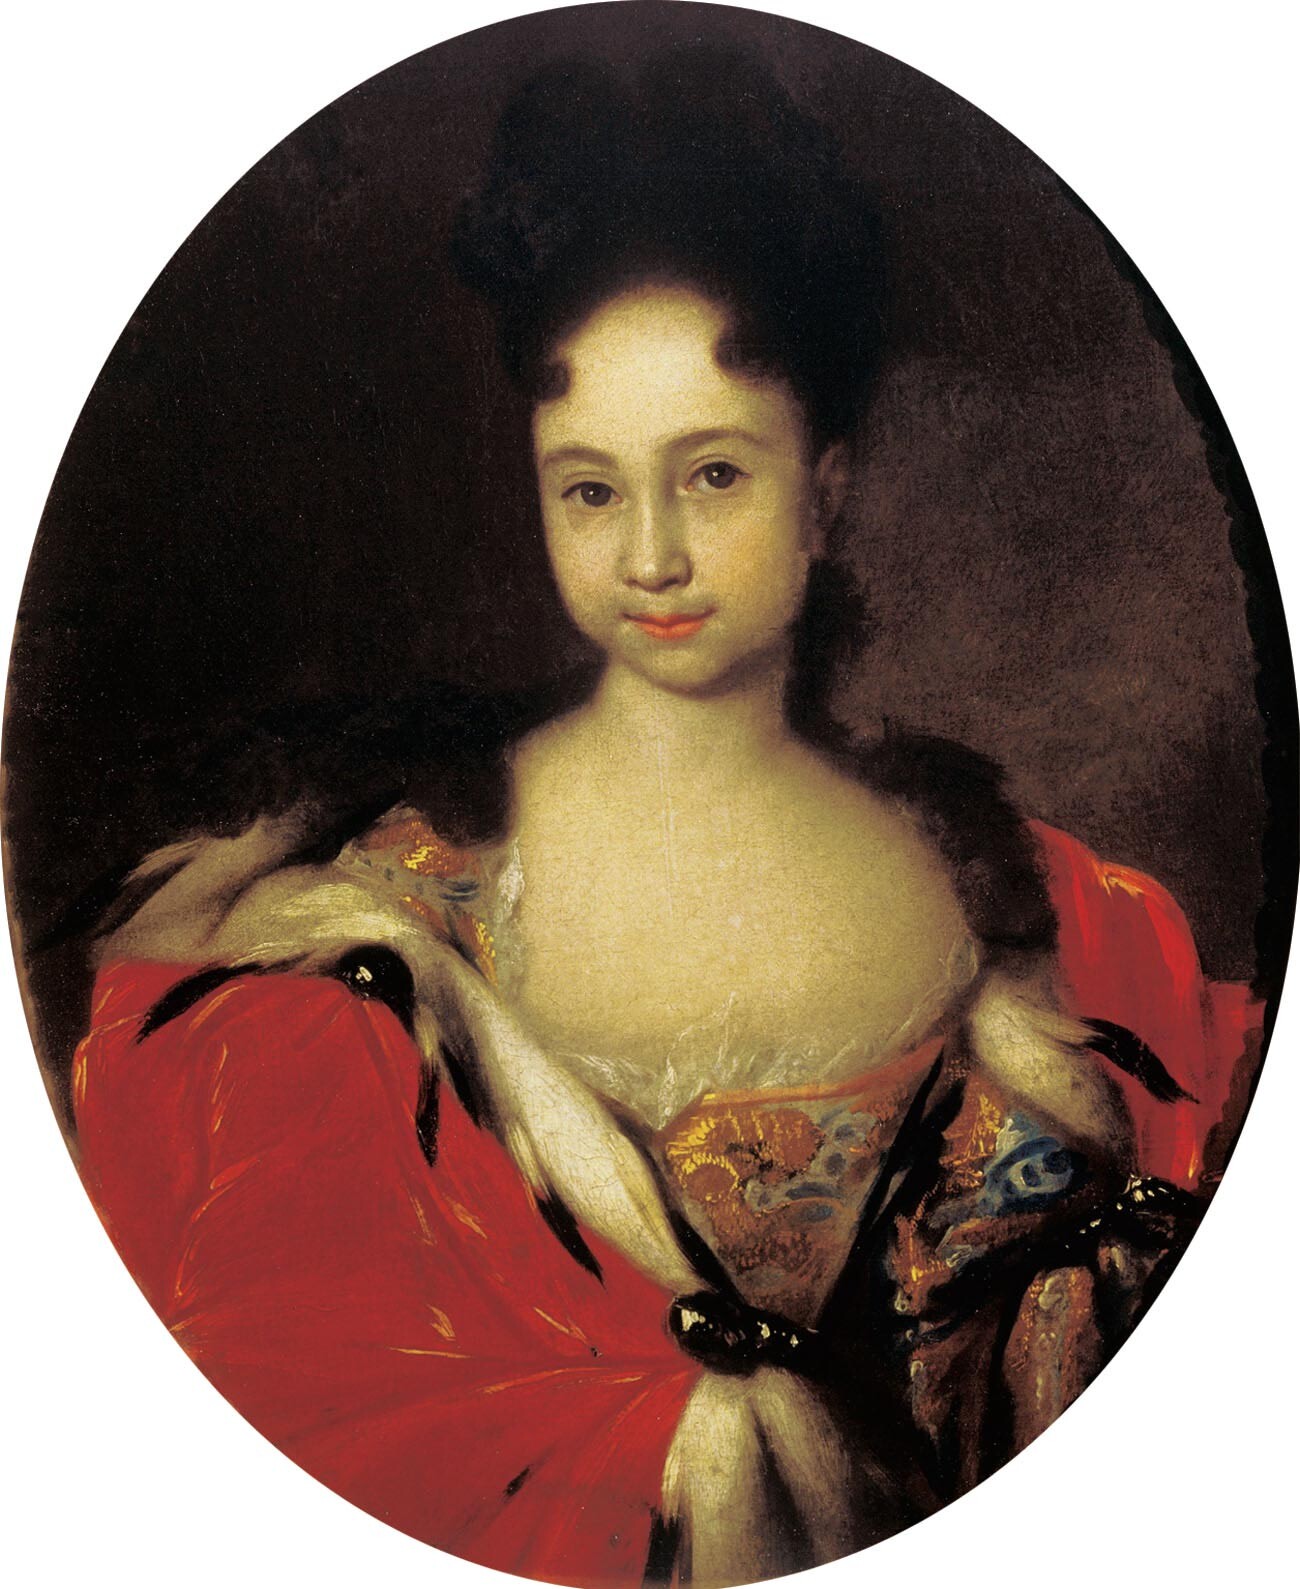 アンナ・ペトローヴナの幼い頃の肖像画